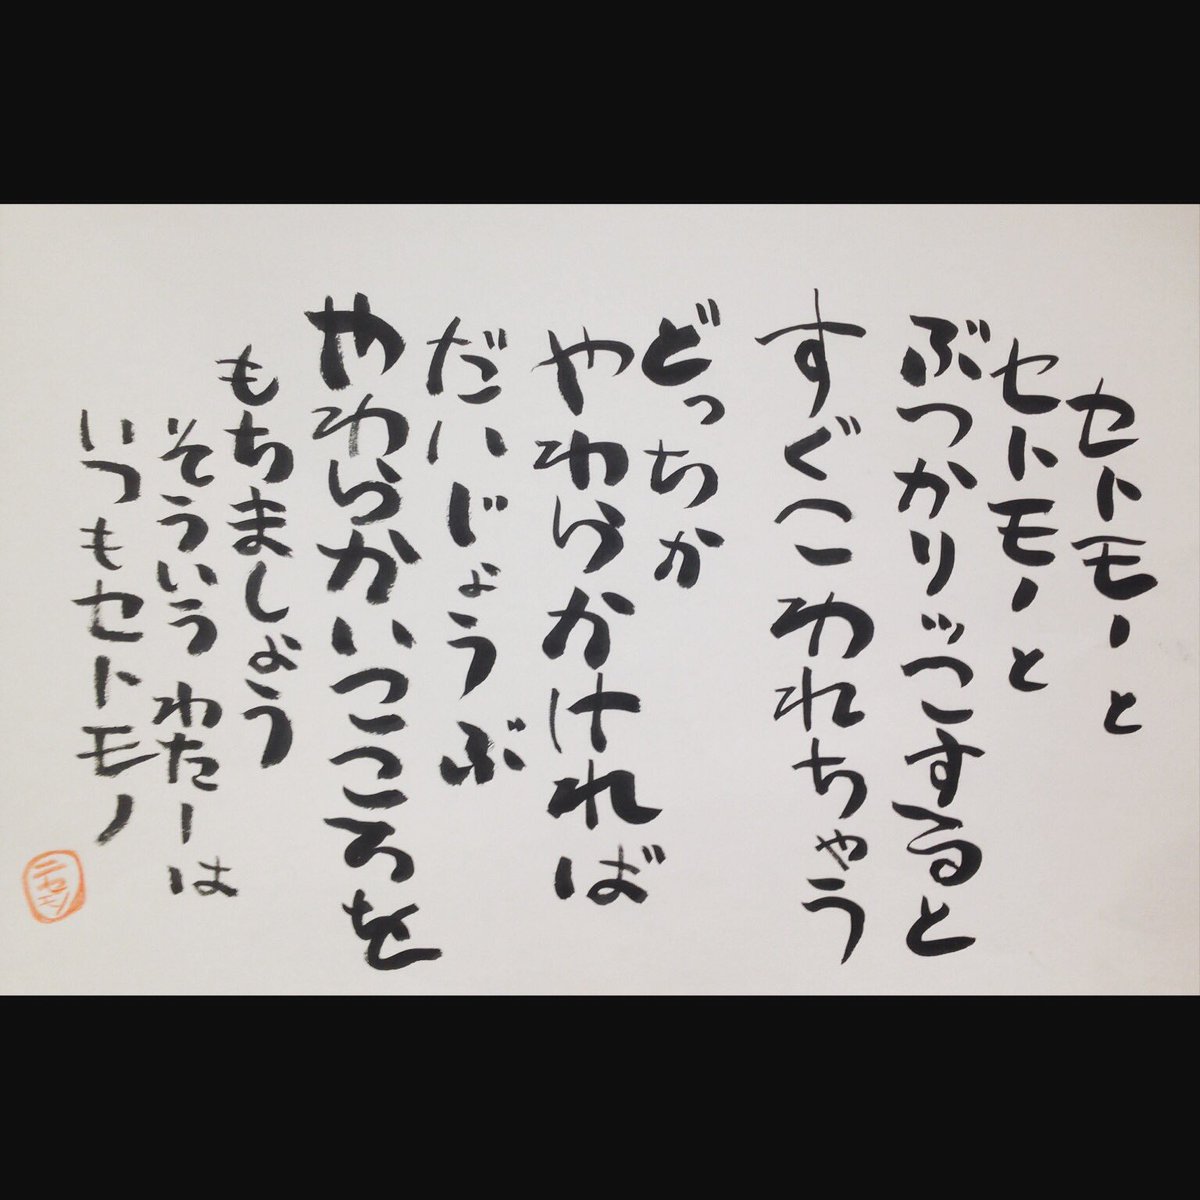 日野謙人 ひのけんと 在 Twitter 上 相田みつを の 詩 Cmのやつ 最後の そういうわたしはいつもセトモノ までいかないと この本来の意味が伝わないよ 味のある字を書けるように模写したけど 全然あかん 書 F4f フォロバ 相互フォロー 筆 T